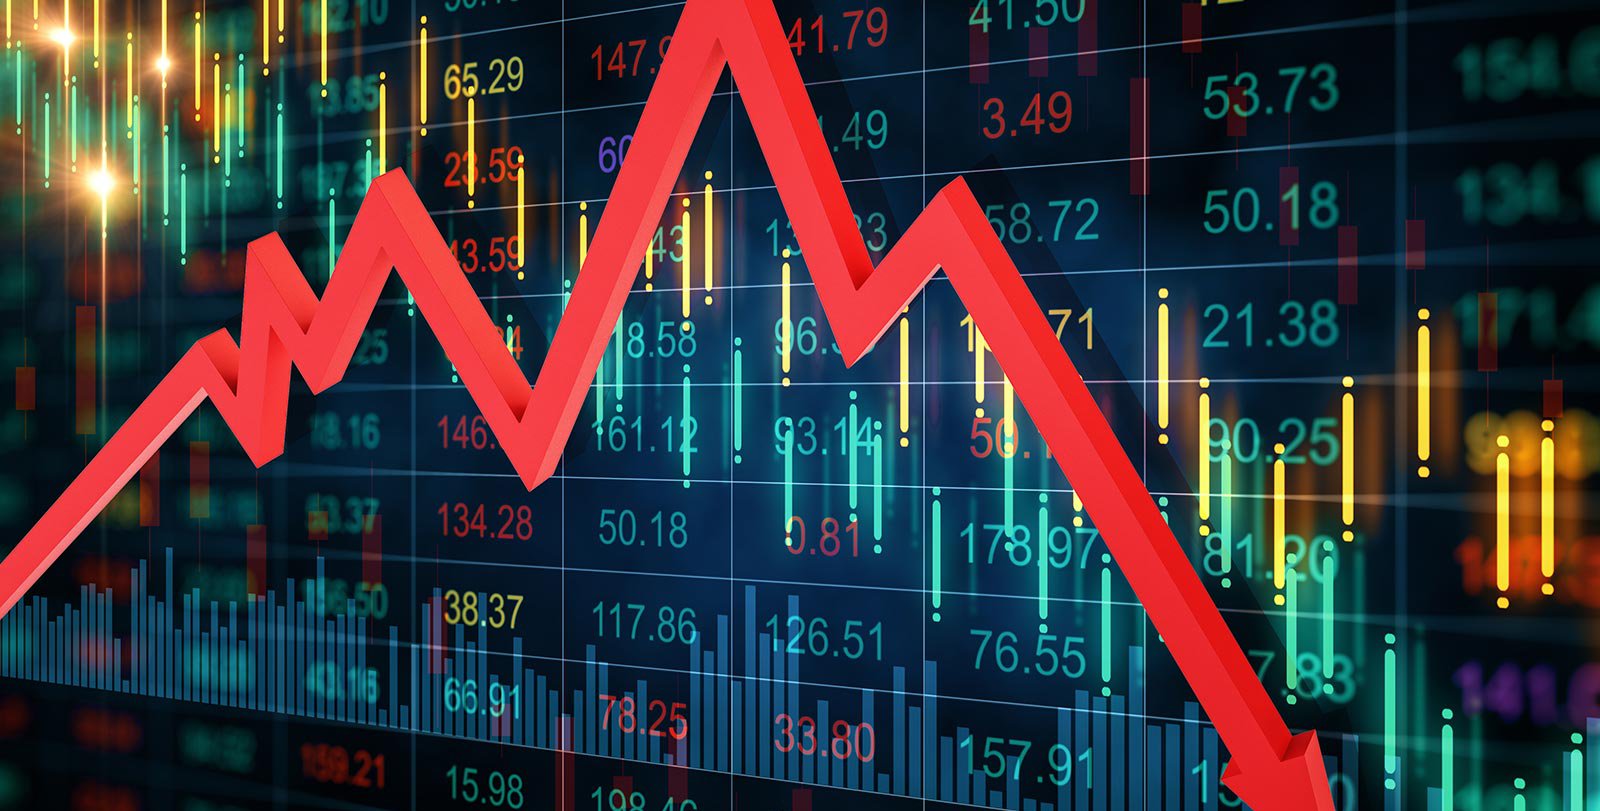 शेयर बाजार: सेंसेक्स 1,000 अंक से अधिक चढ़ा, निफ्टी 17,000 के करीब बैंकिंग शेयरों में तेजी